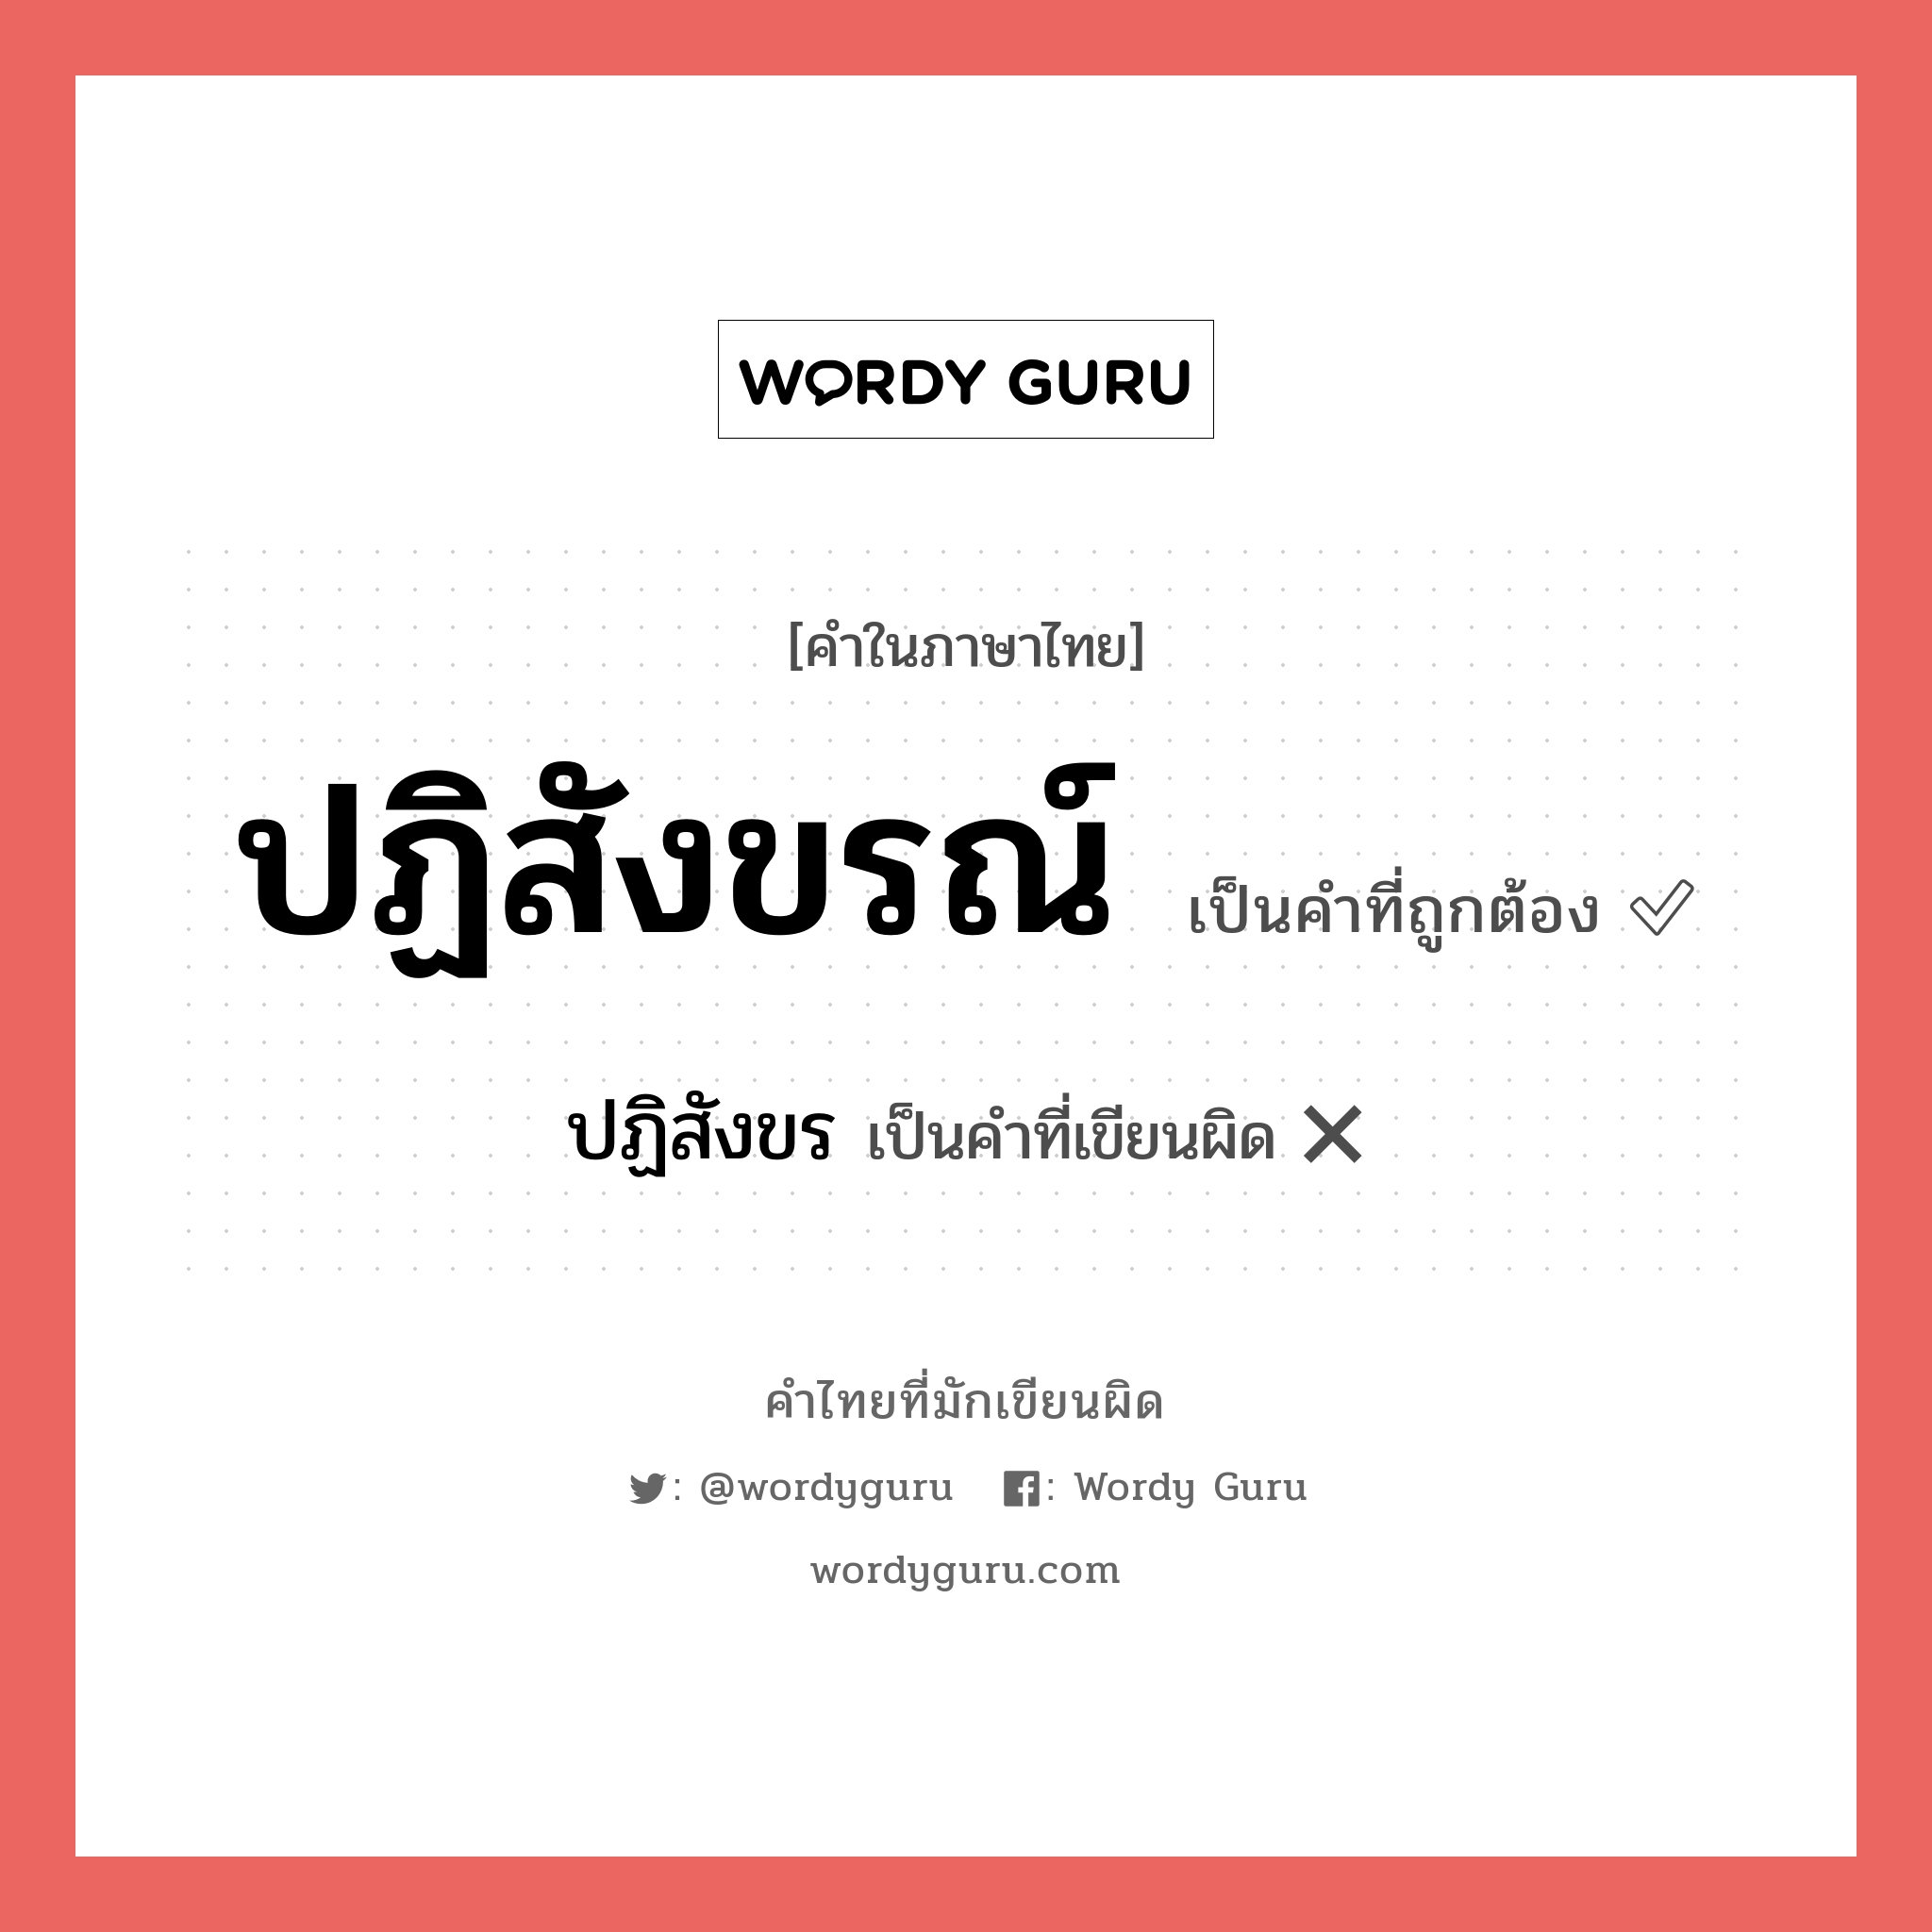 ปฏิสังขร หรือ ปฏิสังขรณ์ คำไหนเขียนถูก?, คำในภาษาไทยที่มักเขียนผิด ปฏิสังขร คำที่ผิด ❌ ปฏิสังขรณ์